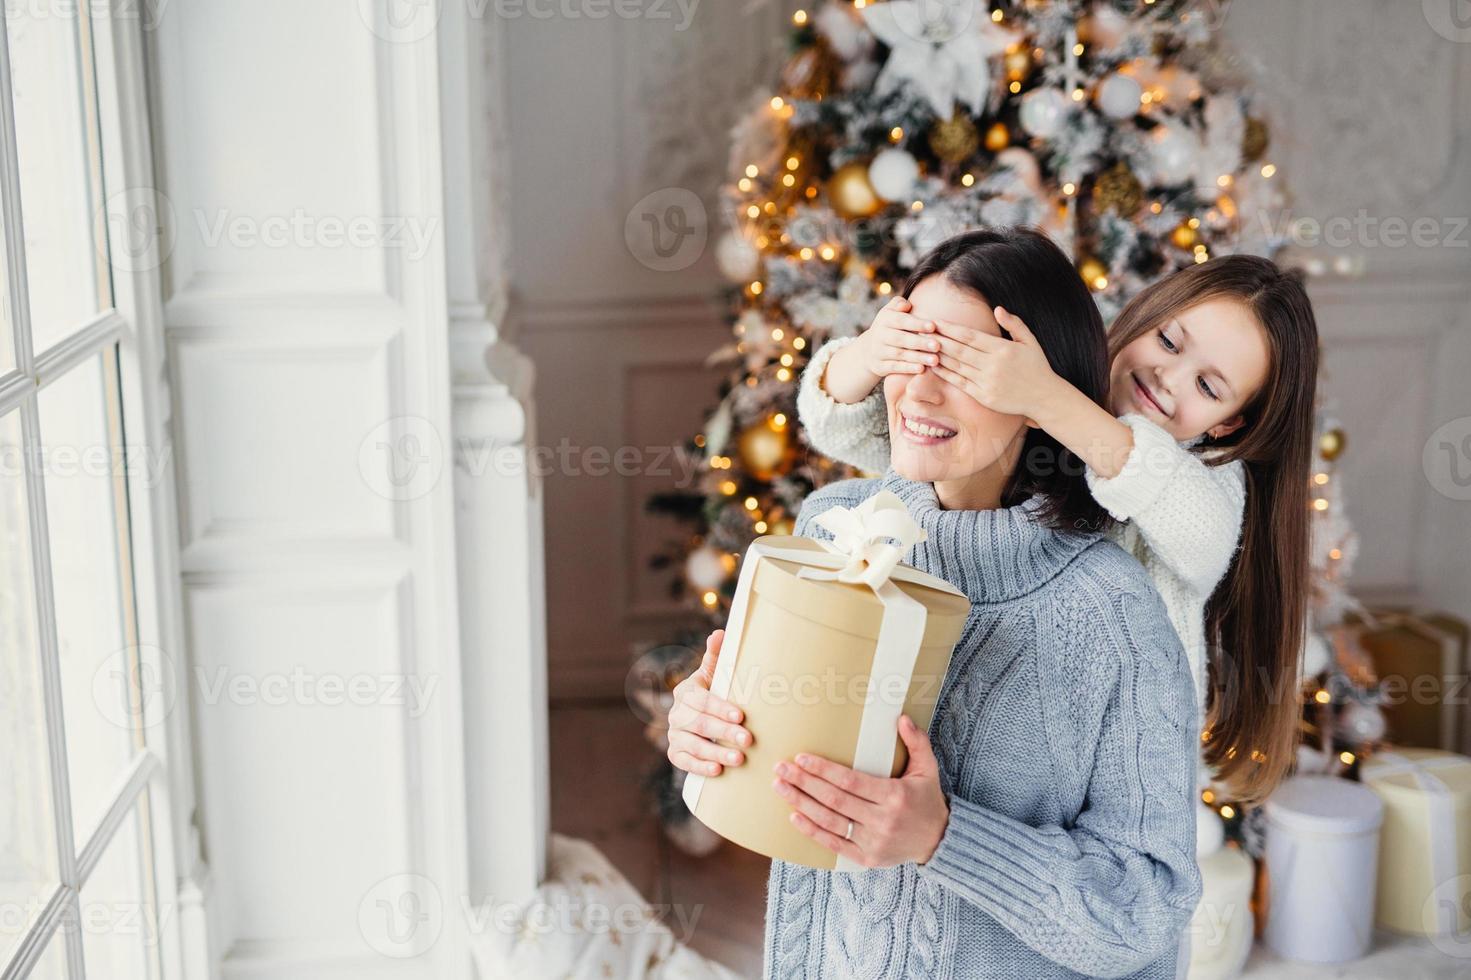 porträt des kleinen mädchens schließt die augen der mutter, gratuliert ihr zu neujahr oder weihnachten, steht neben dem fenster im wohnzimmer, hat ein echtes wunder und gefühl von urlaub. Winter, Feier, Jahreszeit foto